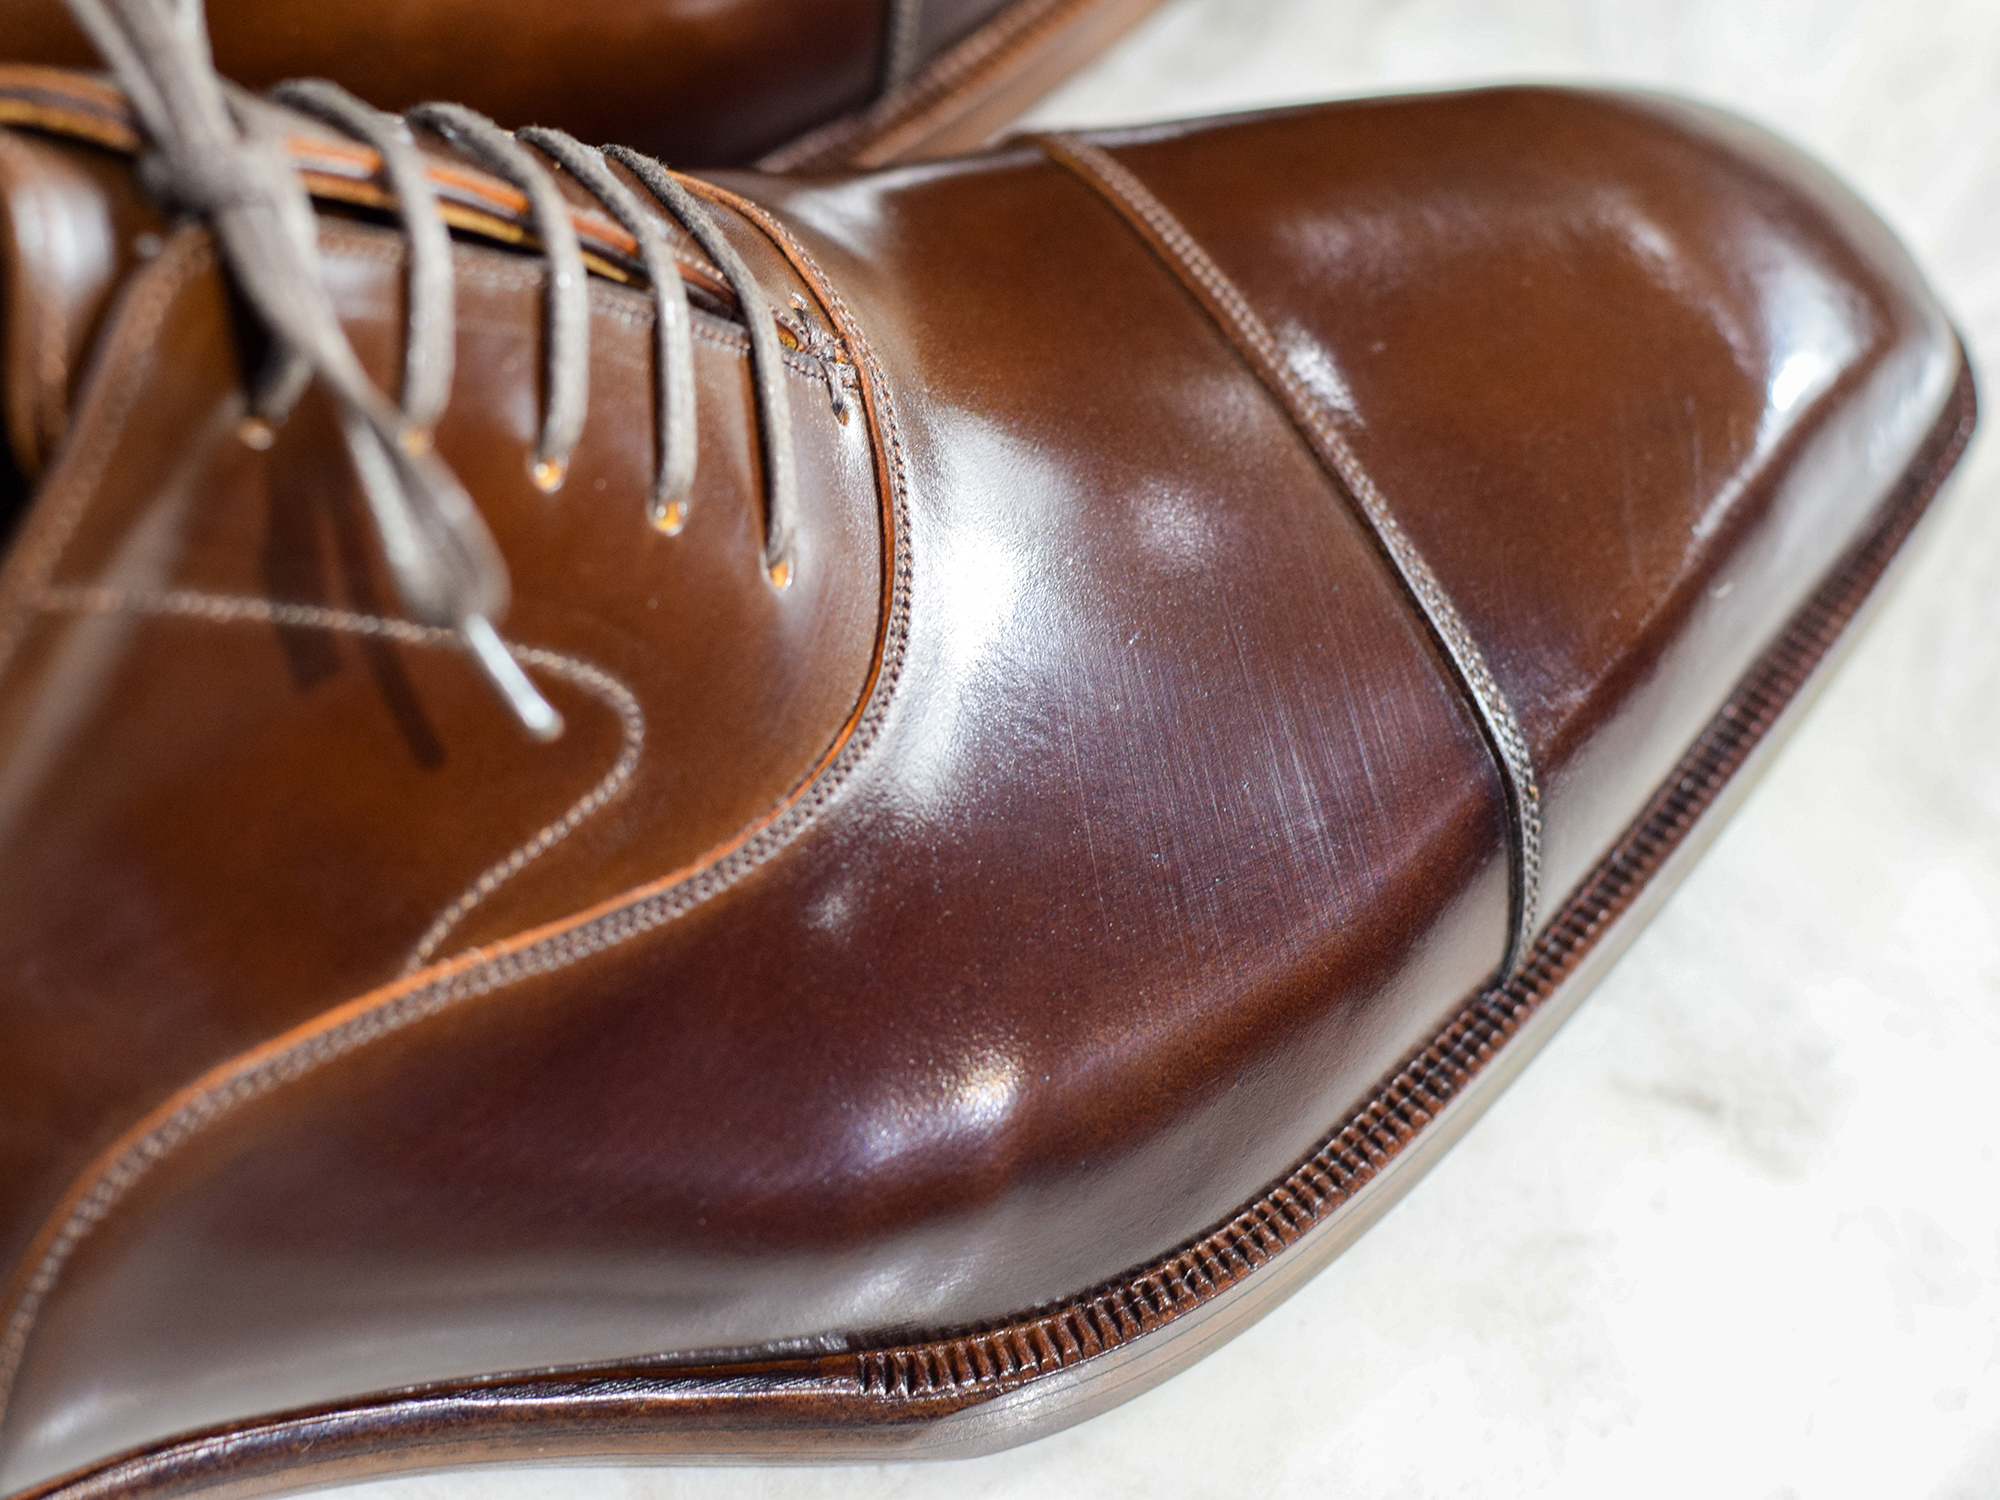 MTO Oxford captoe shoes shell cordovan